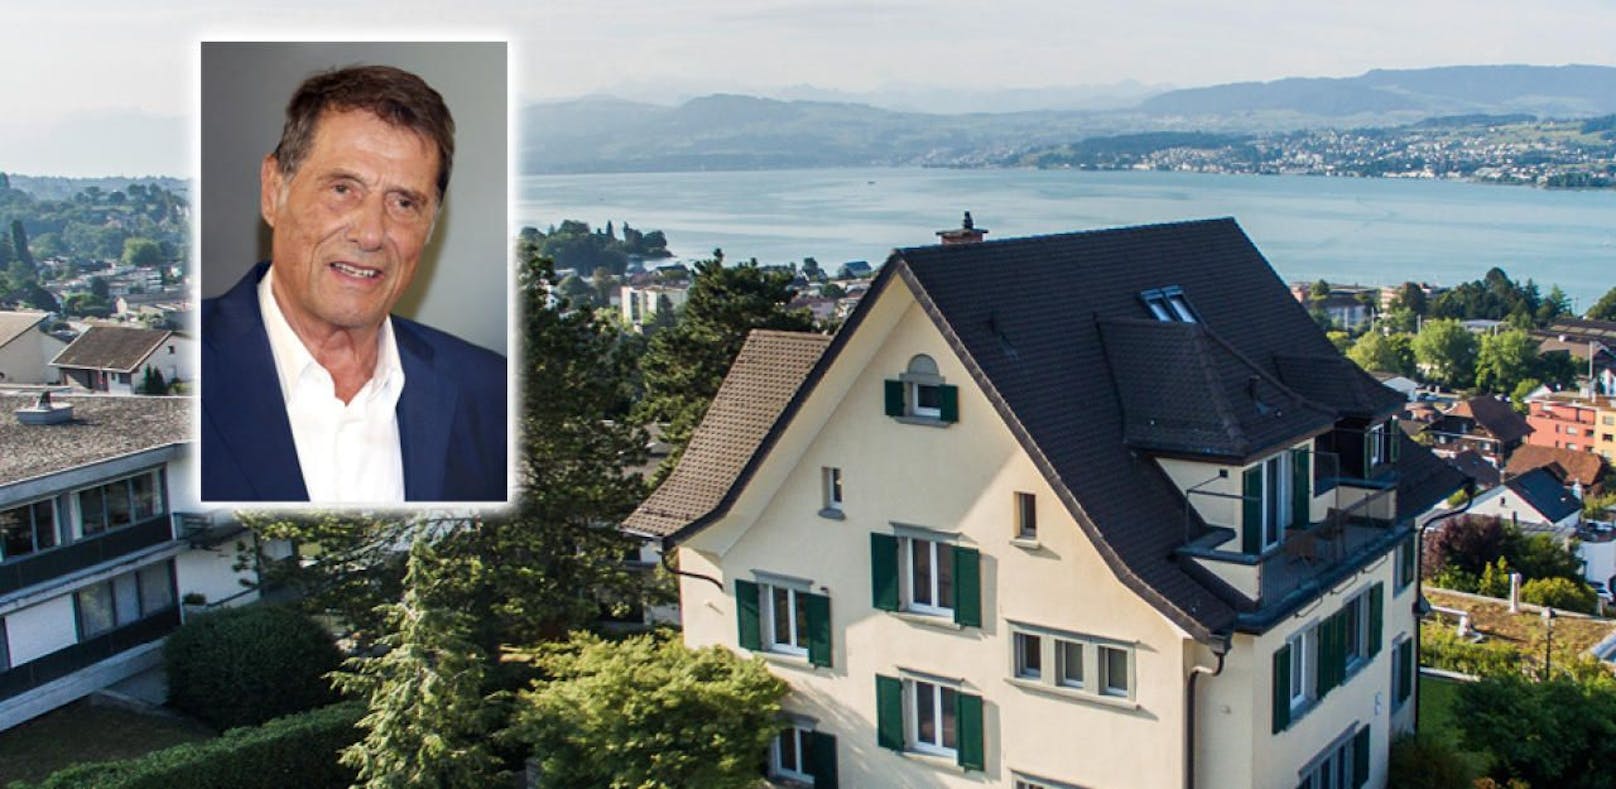 Villa von Udo Jürgens am Zürichsee wird verkauft